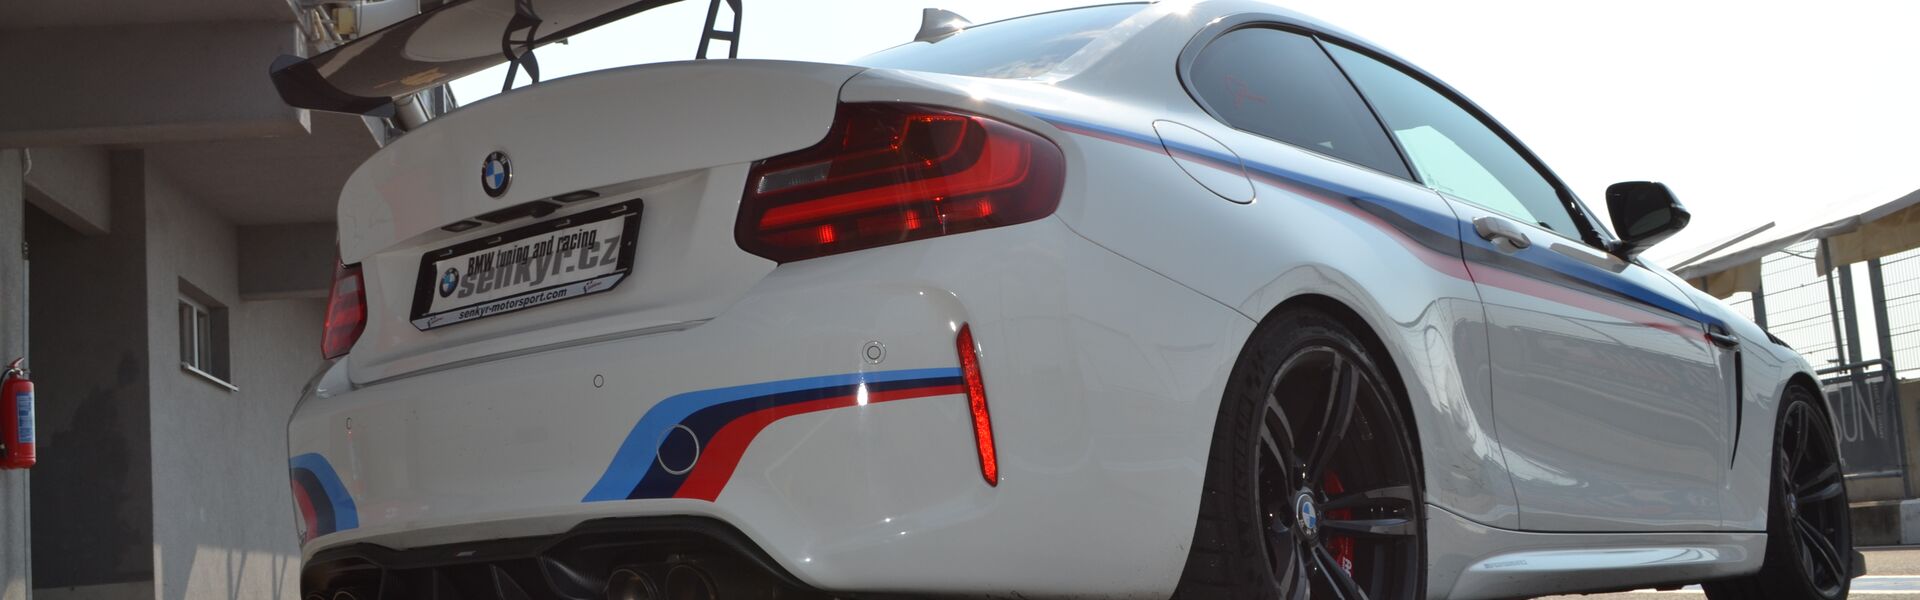 Bodykit/ Aerodynamické prvky pro automobil BMW Z4M